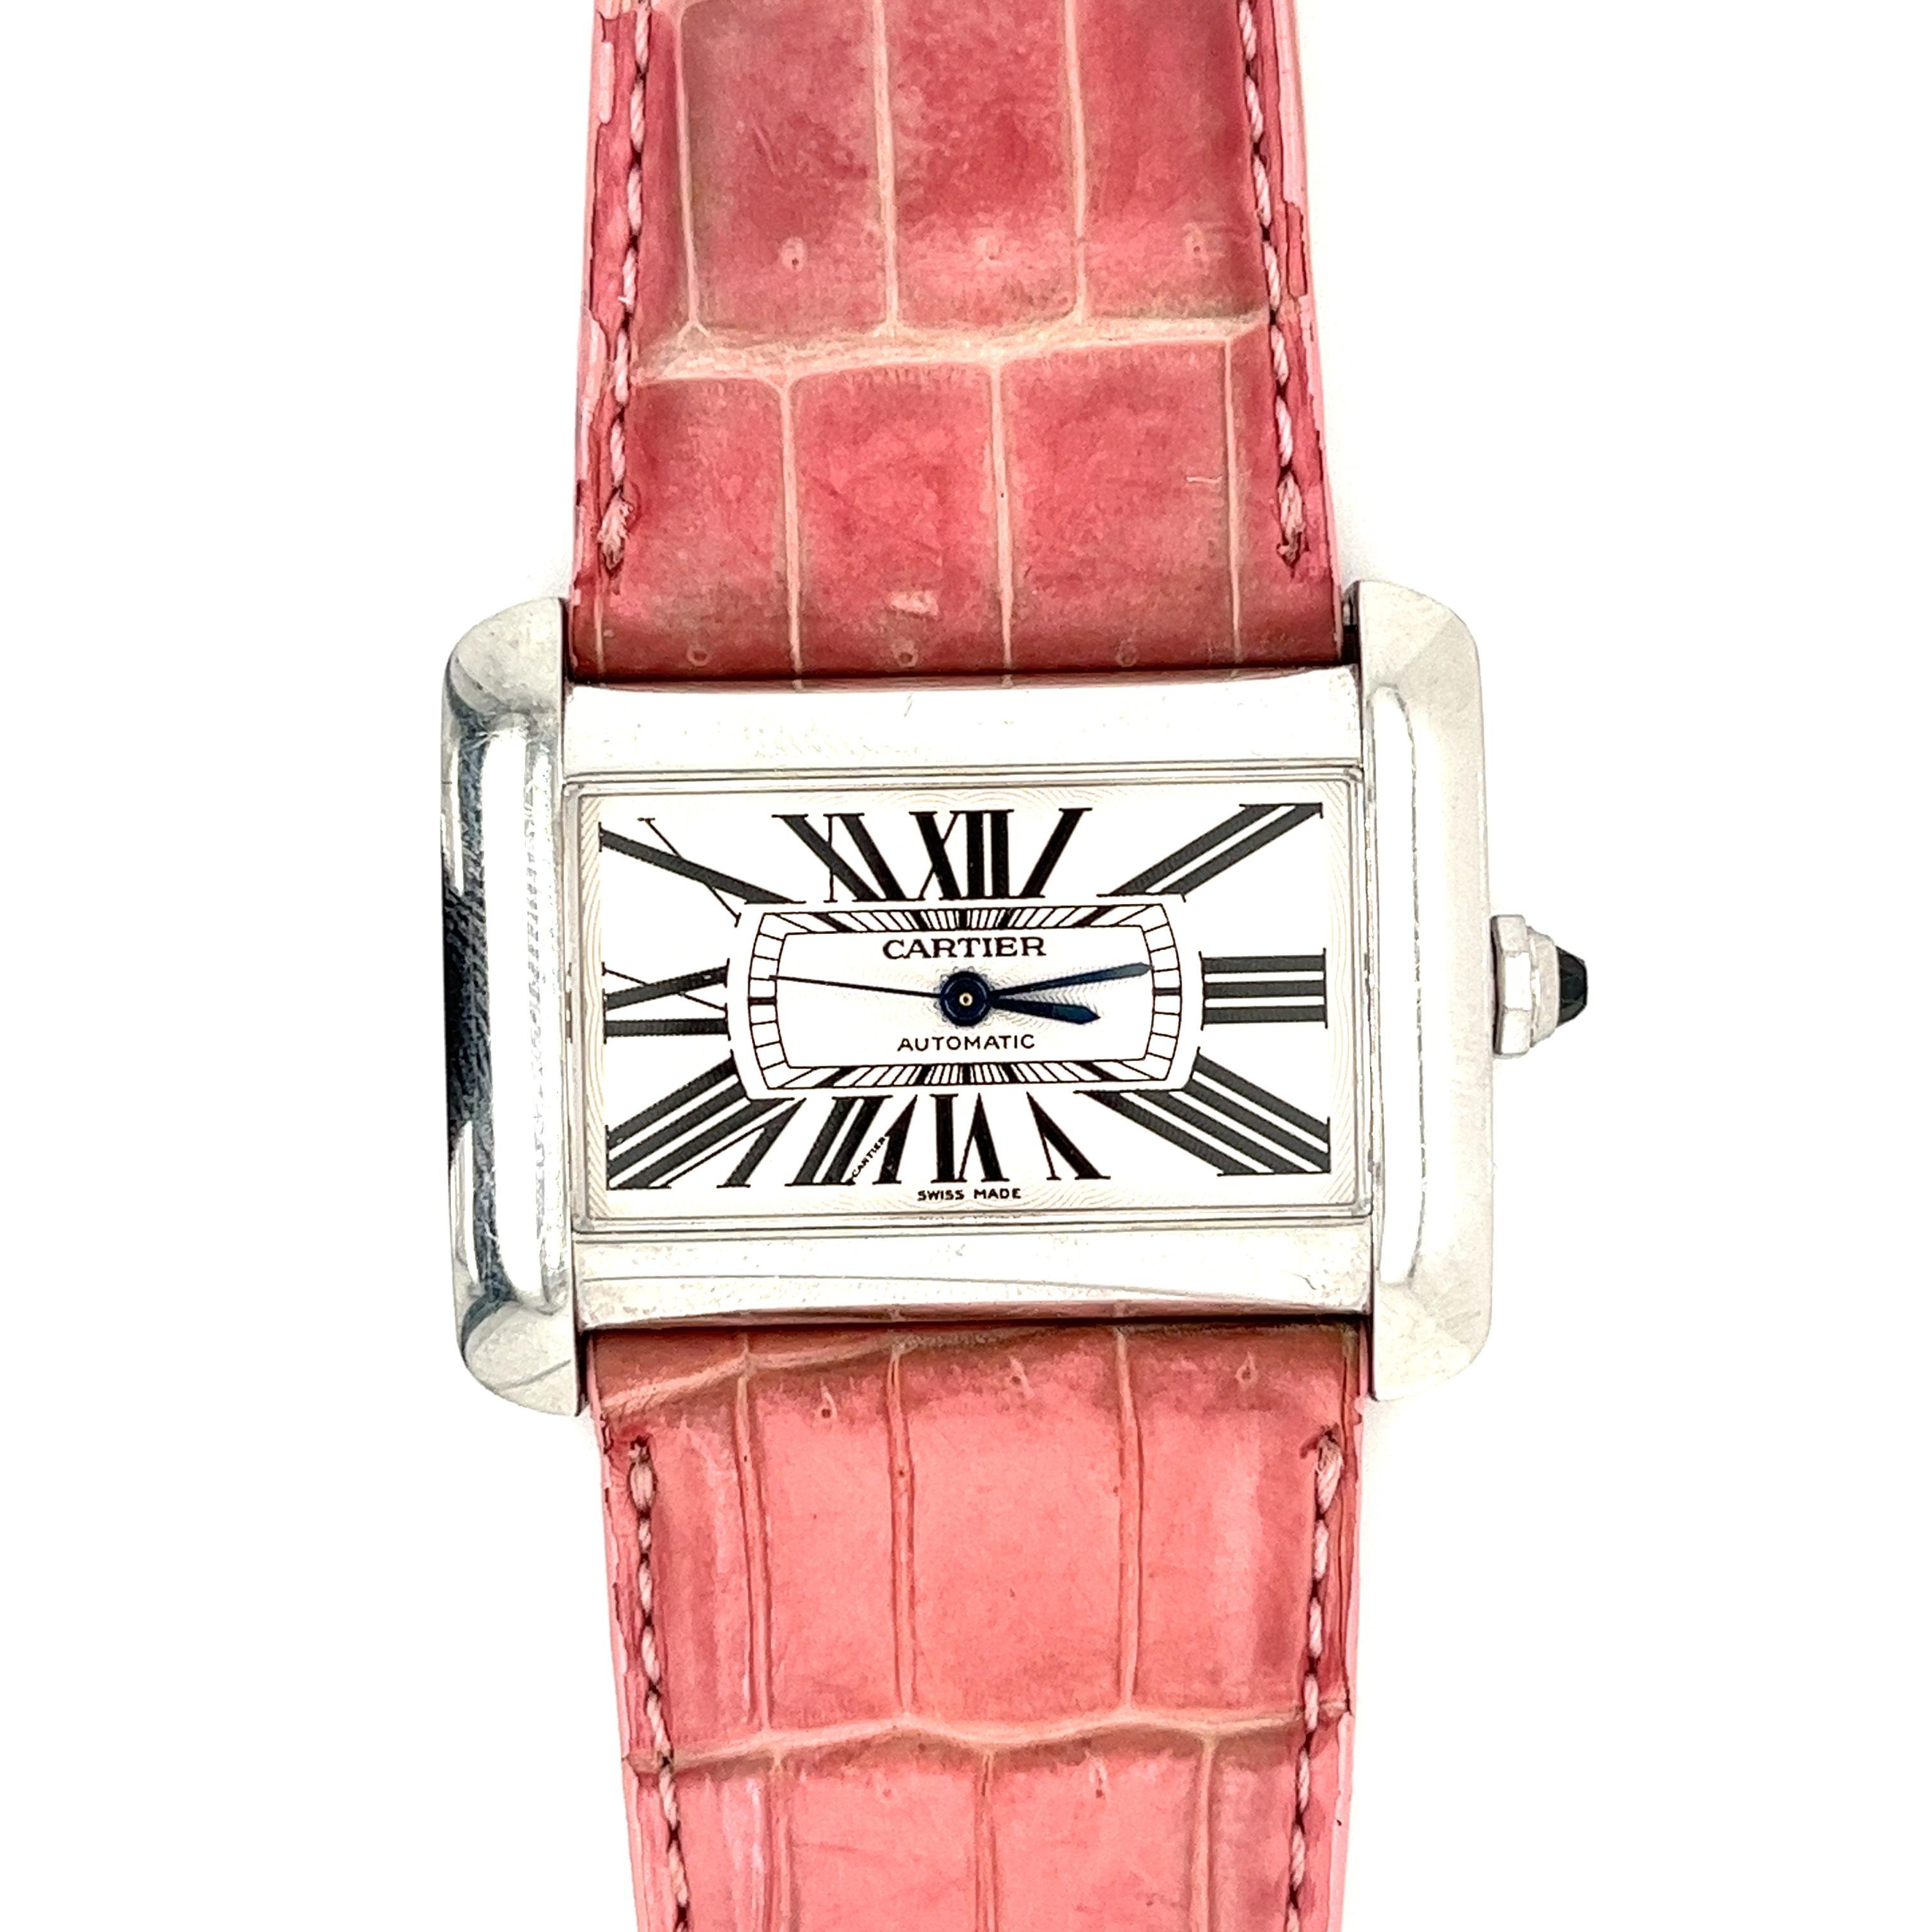 Cartier Automatic Vintage Edelstahl ref. 2612 Divan ser. 1030*** / alle Originalteile / rosafarbenes Lederarmband (passend für 6,5-8 Zoll Handgelenk) / 38mm (Breite) x 30mm (Höhe) Zifferblatt / 8,3mm dick. 																					

Pre-Owned Cartier